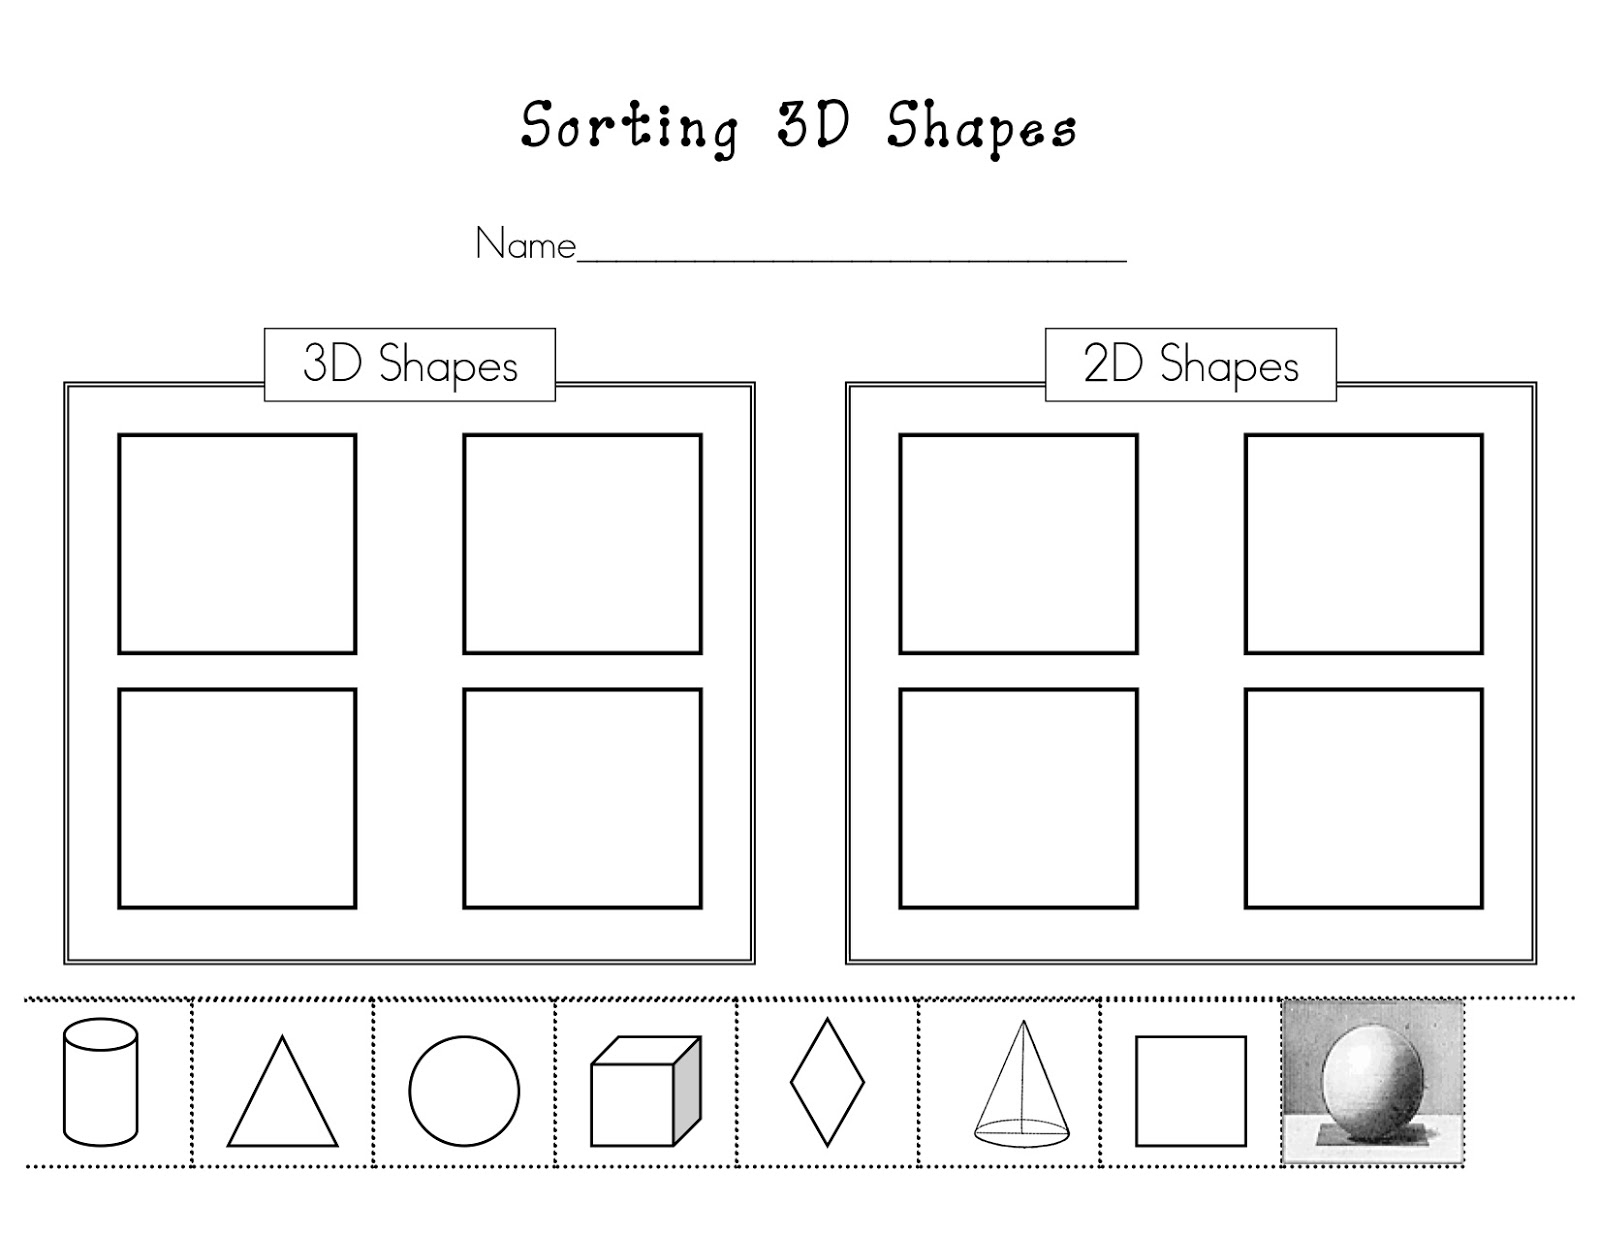 2D 3D Shapes Kindergarten Worksheet Image